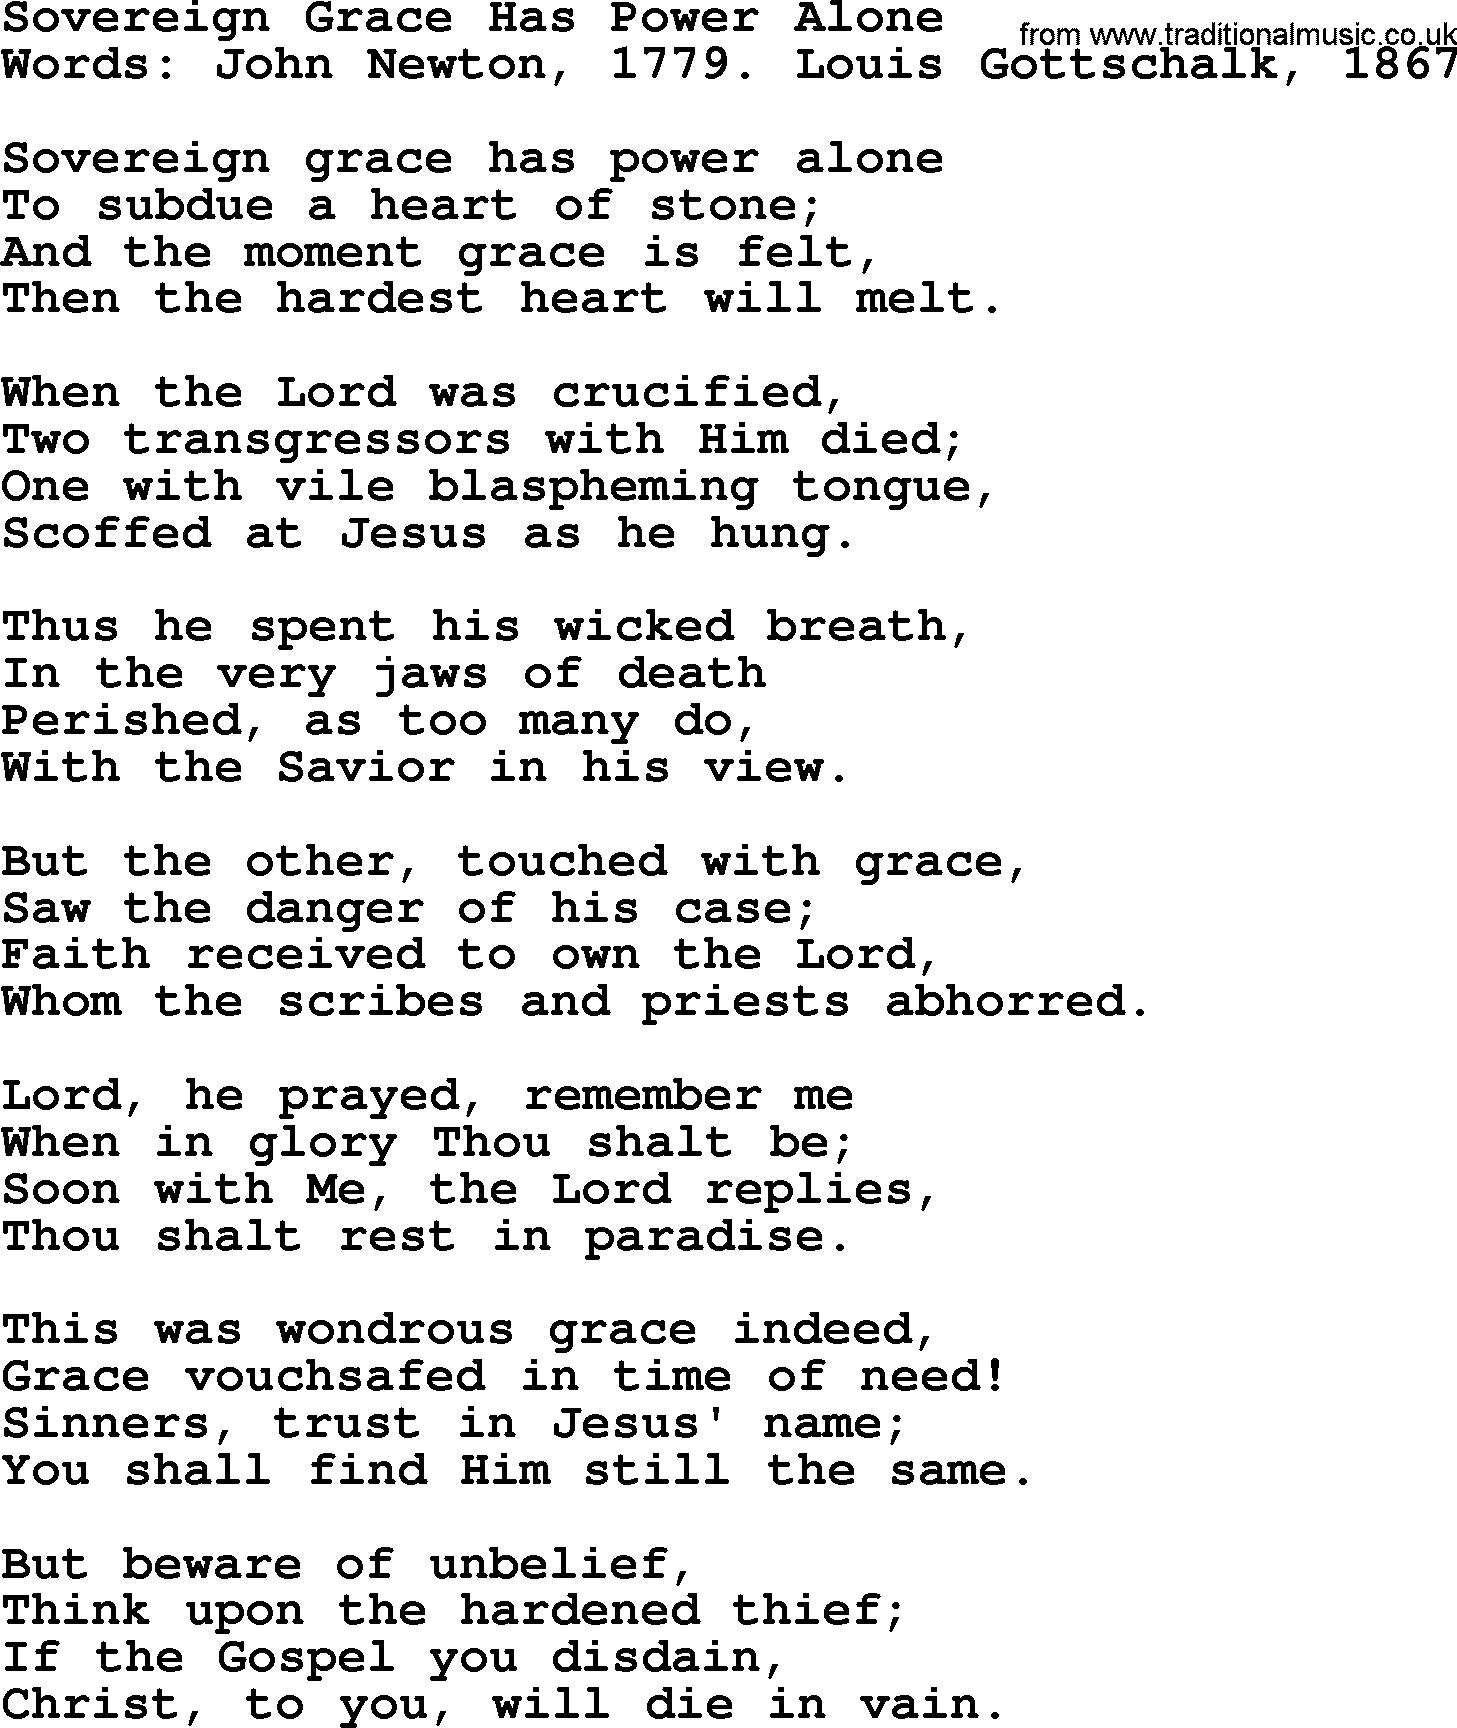 John Newton hymn: Sovereign Grace Has Power Alone, lyrics